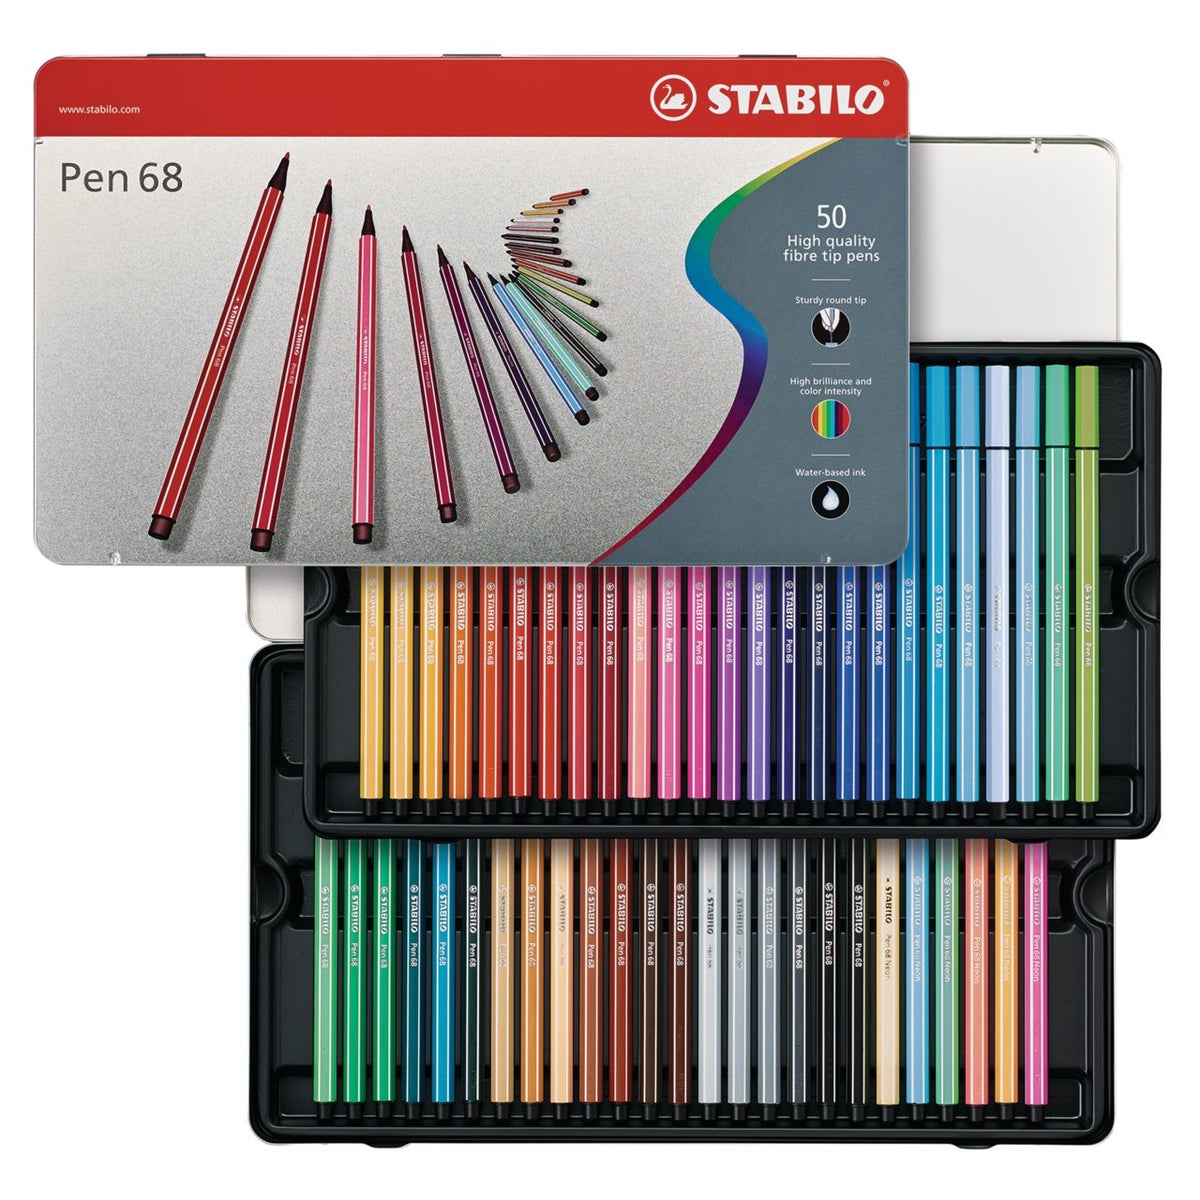 STABILO point 88 Pen & Pen 68 Neon Marker Wallet Set 